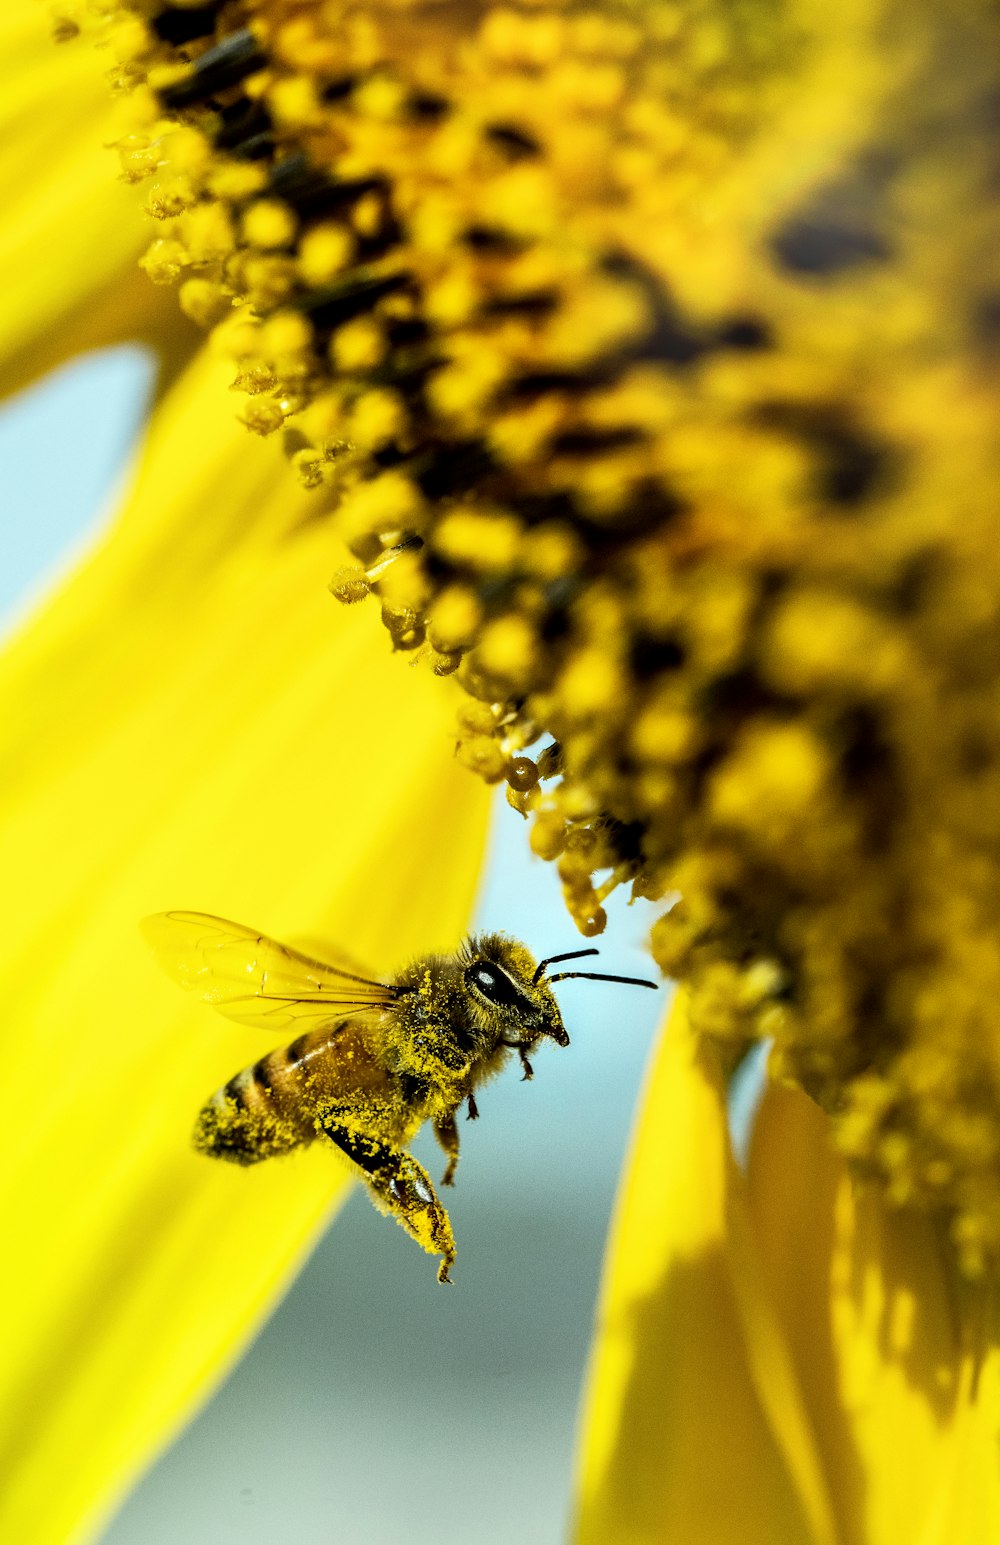 abeja amarilla volando al lado de la flor